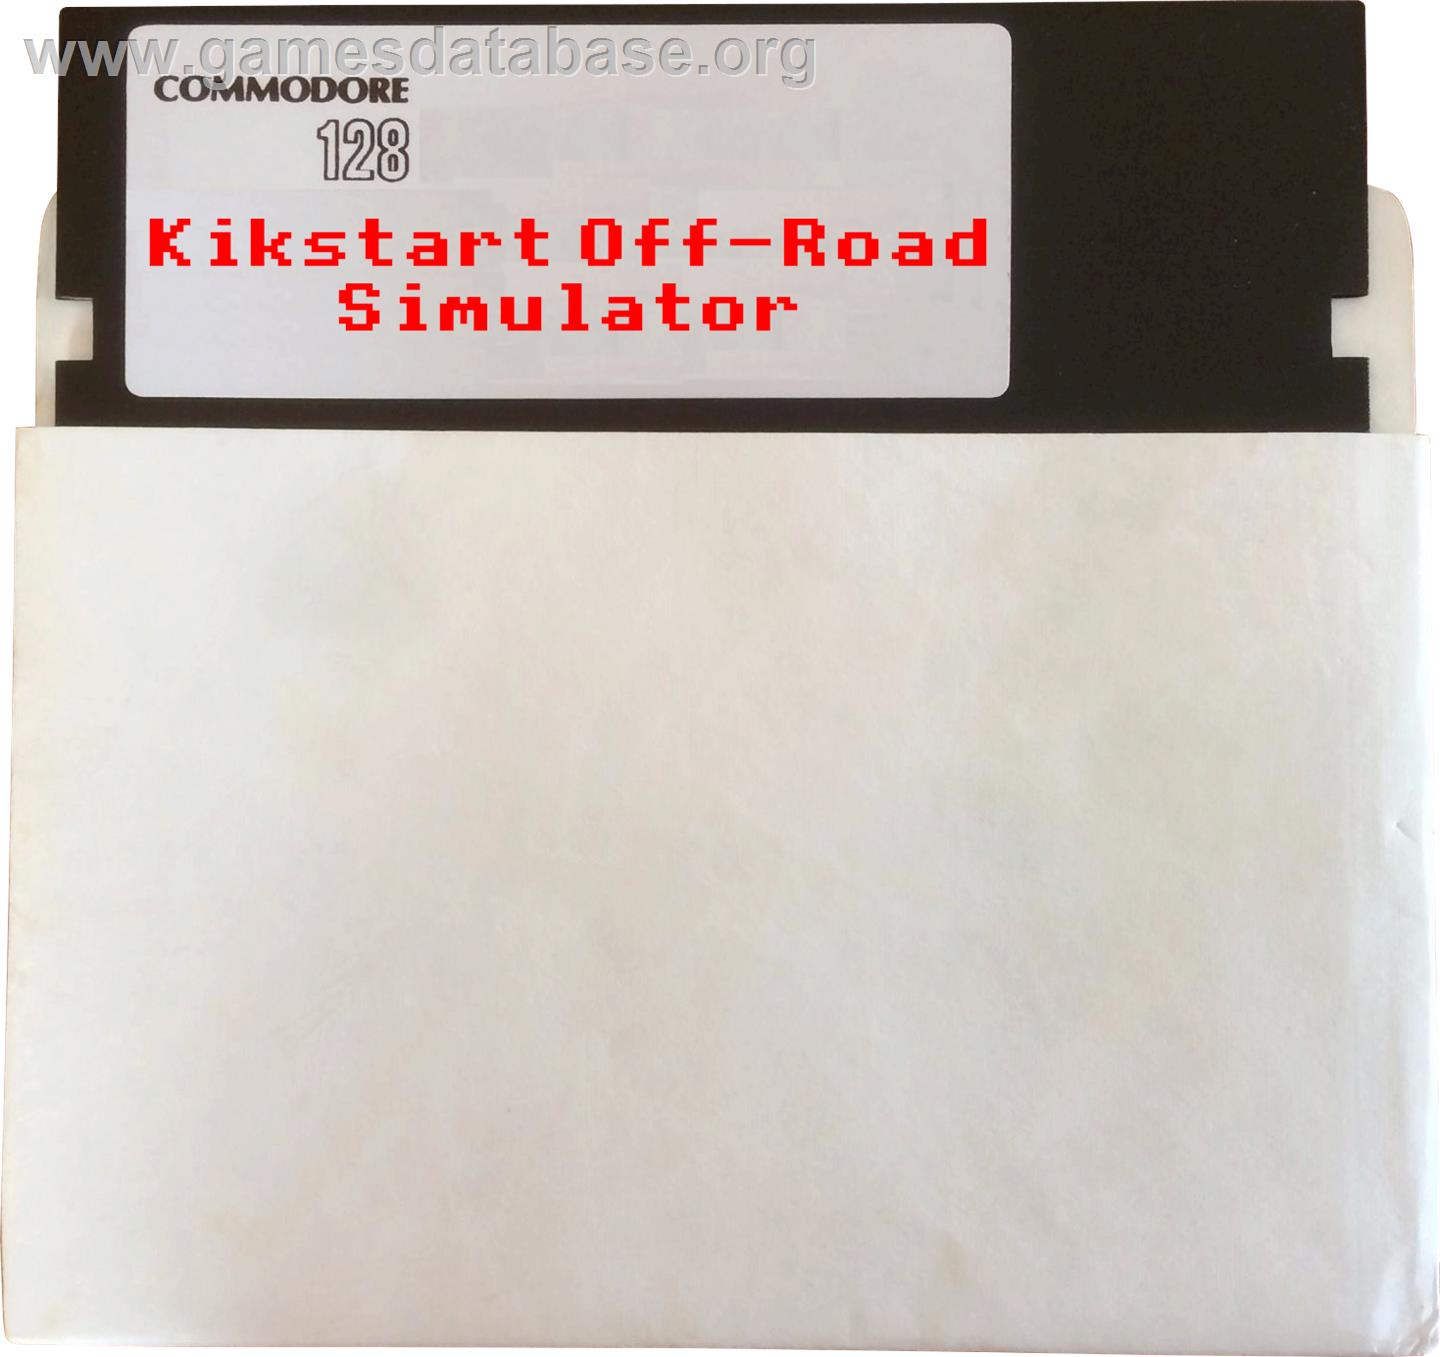 Kikstart: Off-Road Simulator - Commodore 128 - Artwork - Disc